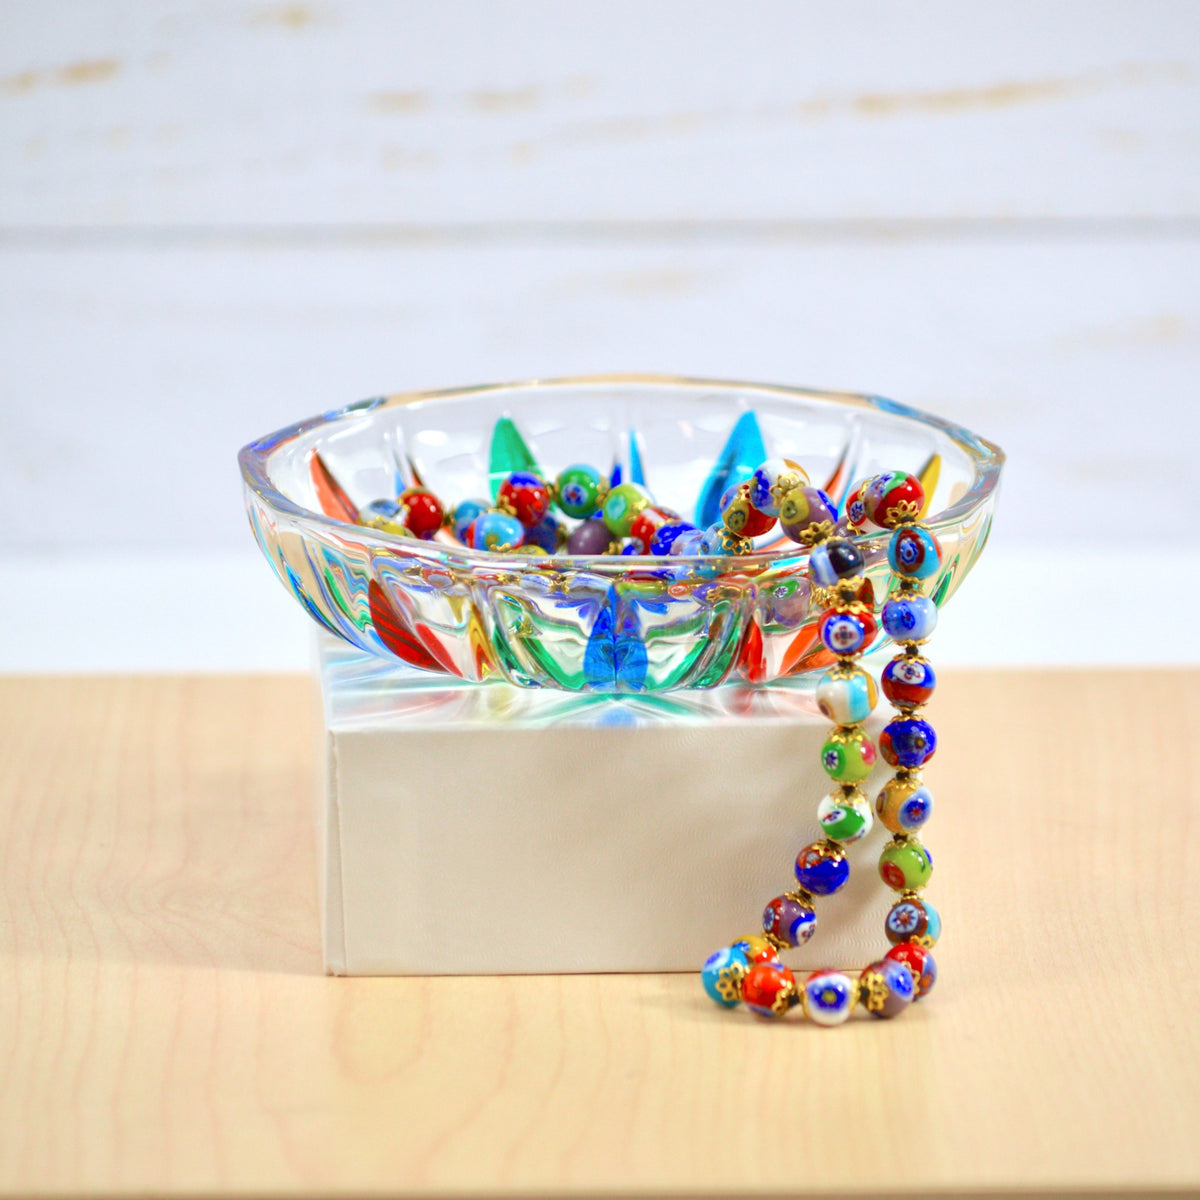 Gala Italian Crystal Small Bowl, Made in Italy - My Italian Decor